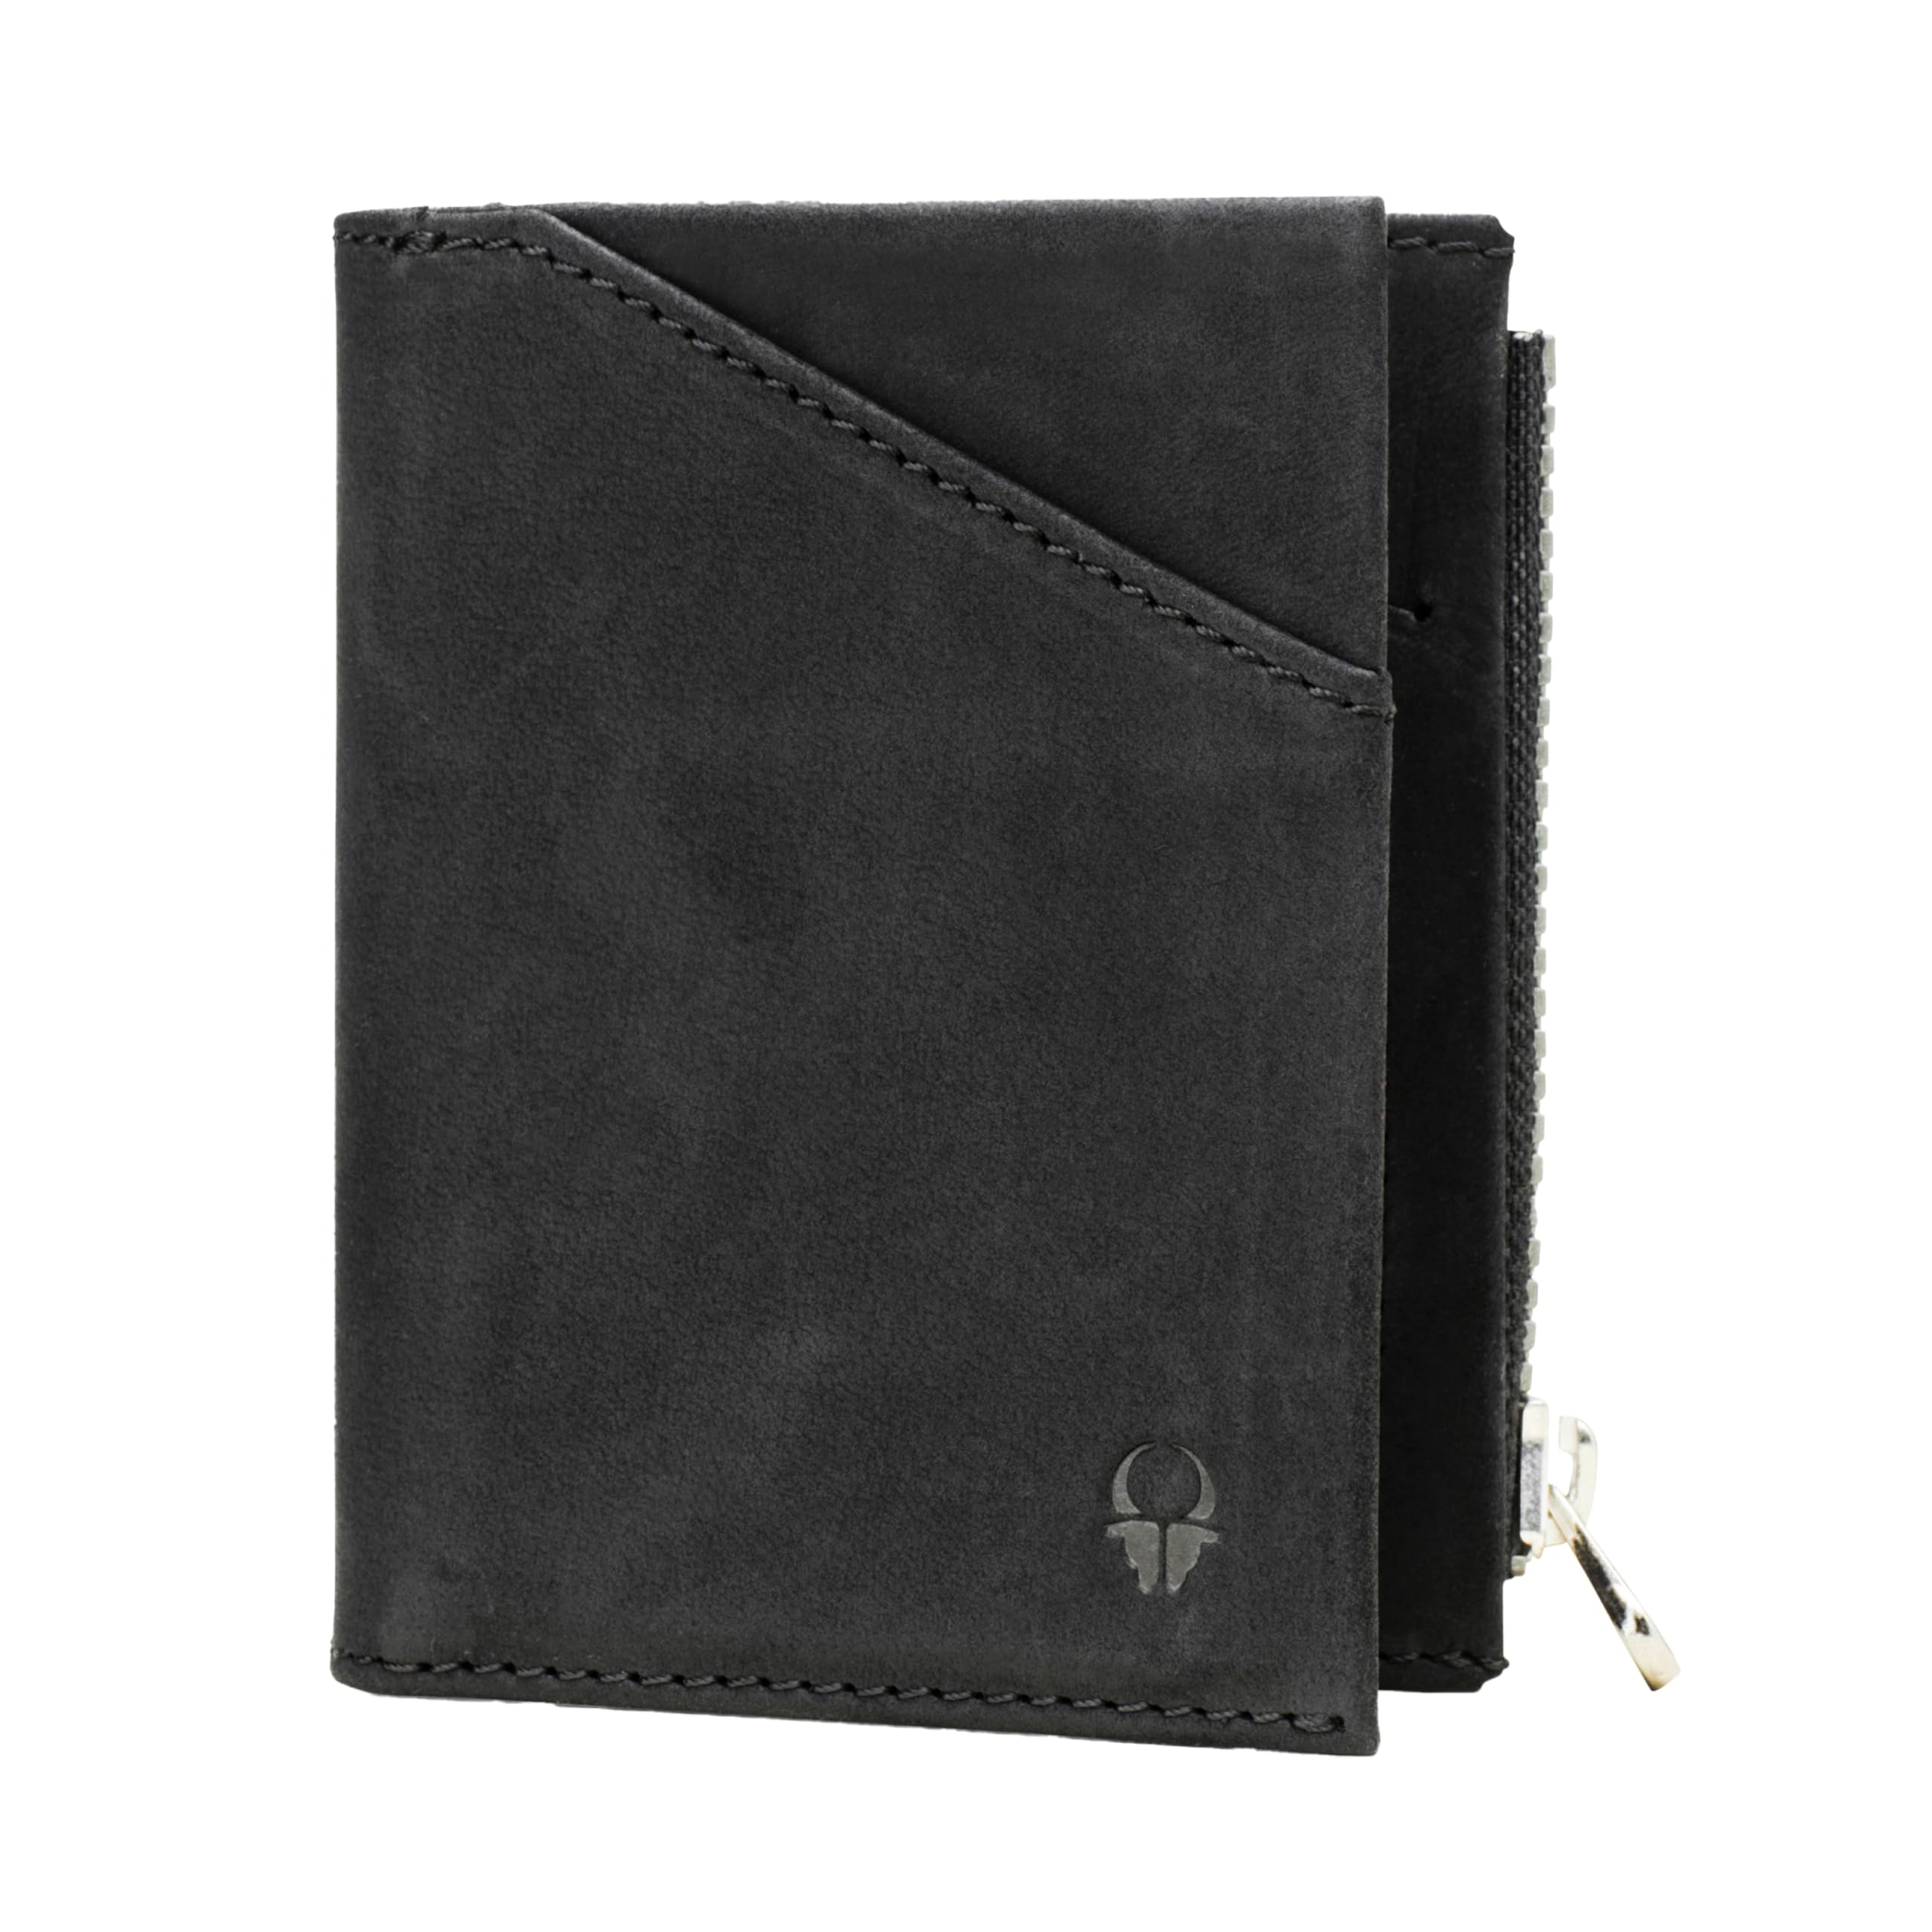 DONBOLSO Herren Leder Slim Wallet mit Münzfach - Herren Front Pocket Wallet - Minimalistische Brieftasche RFID-Blockierung Karteninhaber - Leder Bifold Slim Wallet für Männer mit schönen Geschenk-Box